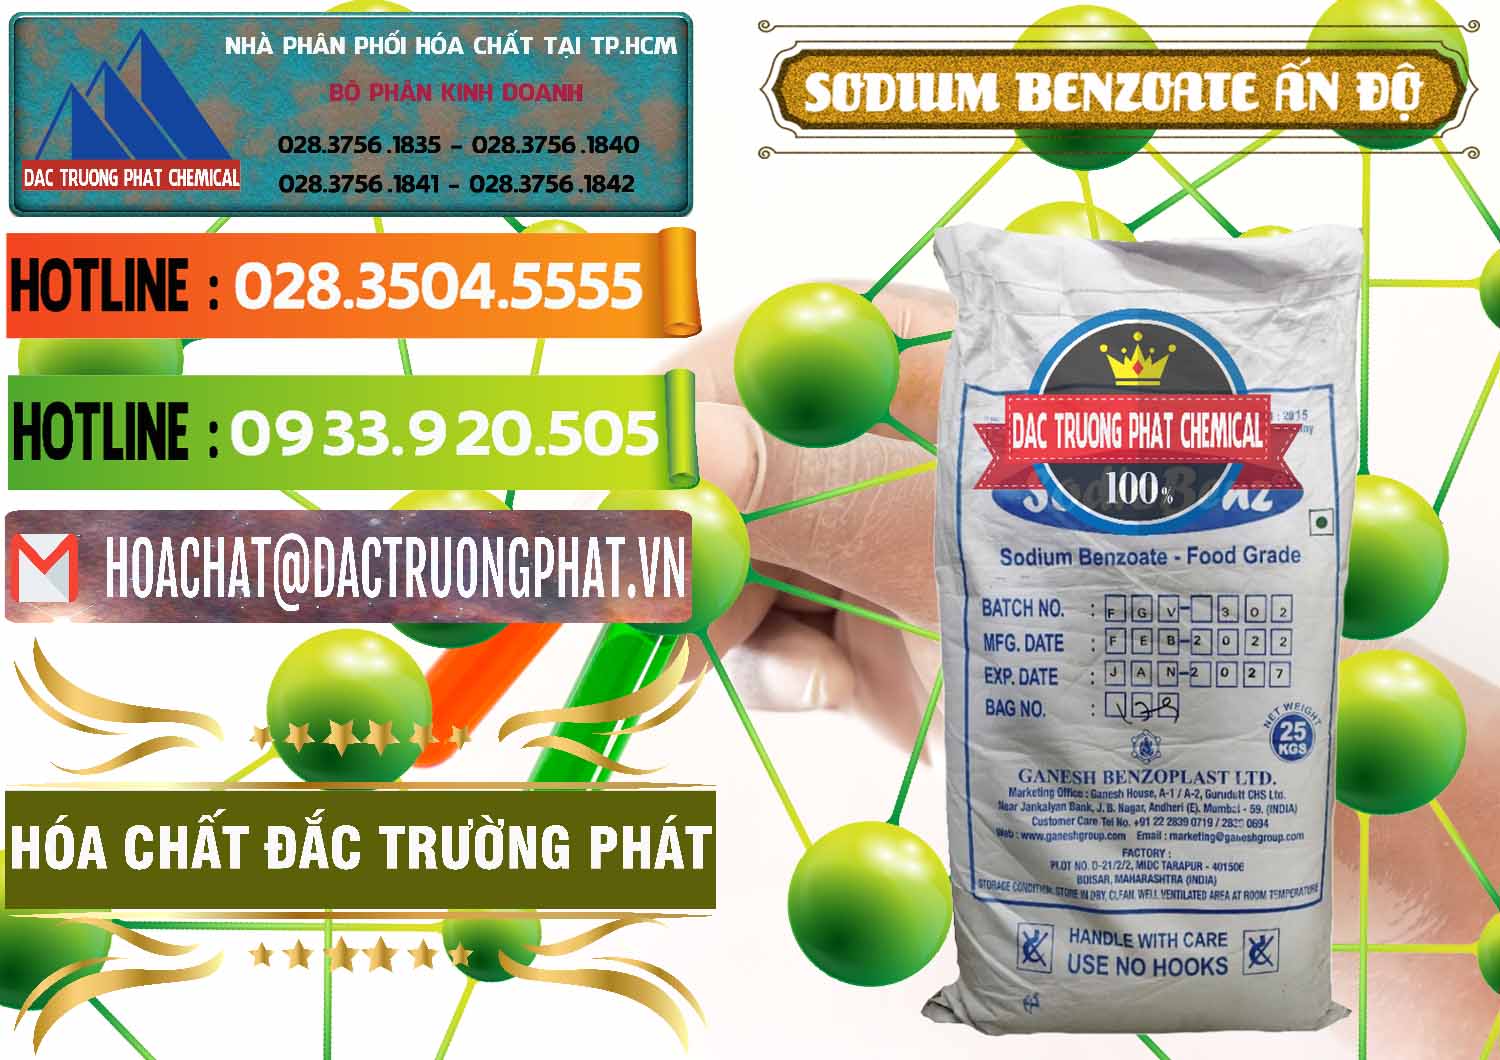 Nơi chuyên kinh doanh và bán Sodium Benzoate - Mốc Bột Ấn Độ India - 0361 - Đơn vị cung cấp - phân phối hóa chất tại TP.HCM - cungcaphoachat.com.vn